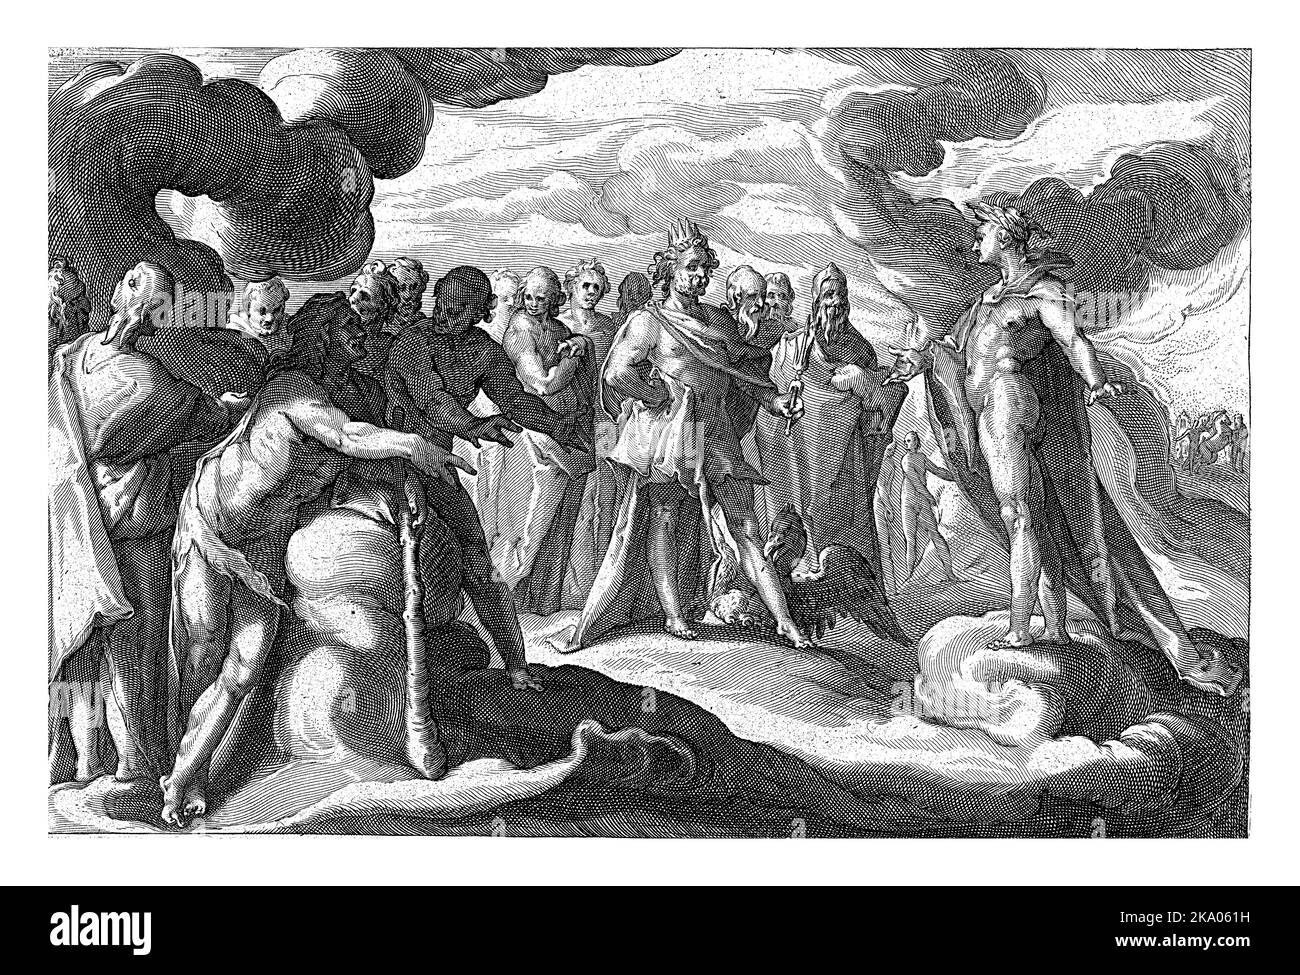 Nach Phaethons Tod hüllt sich der sonnengott in Trauer und beraubt die Erde des Tageslichts. Stockfoto